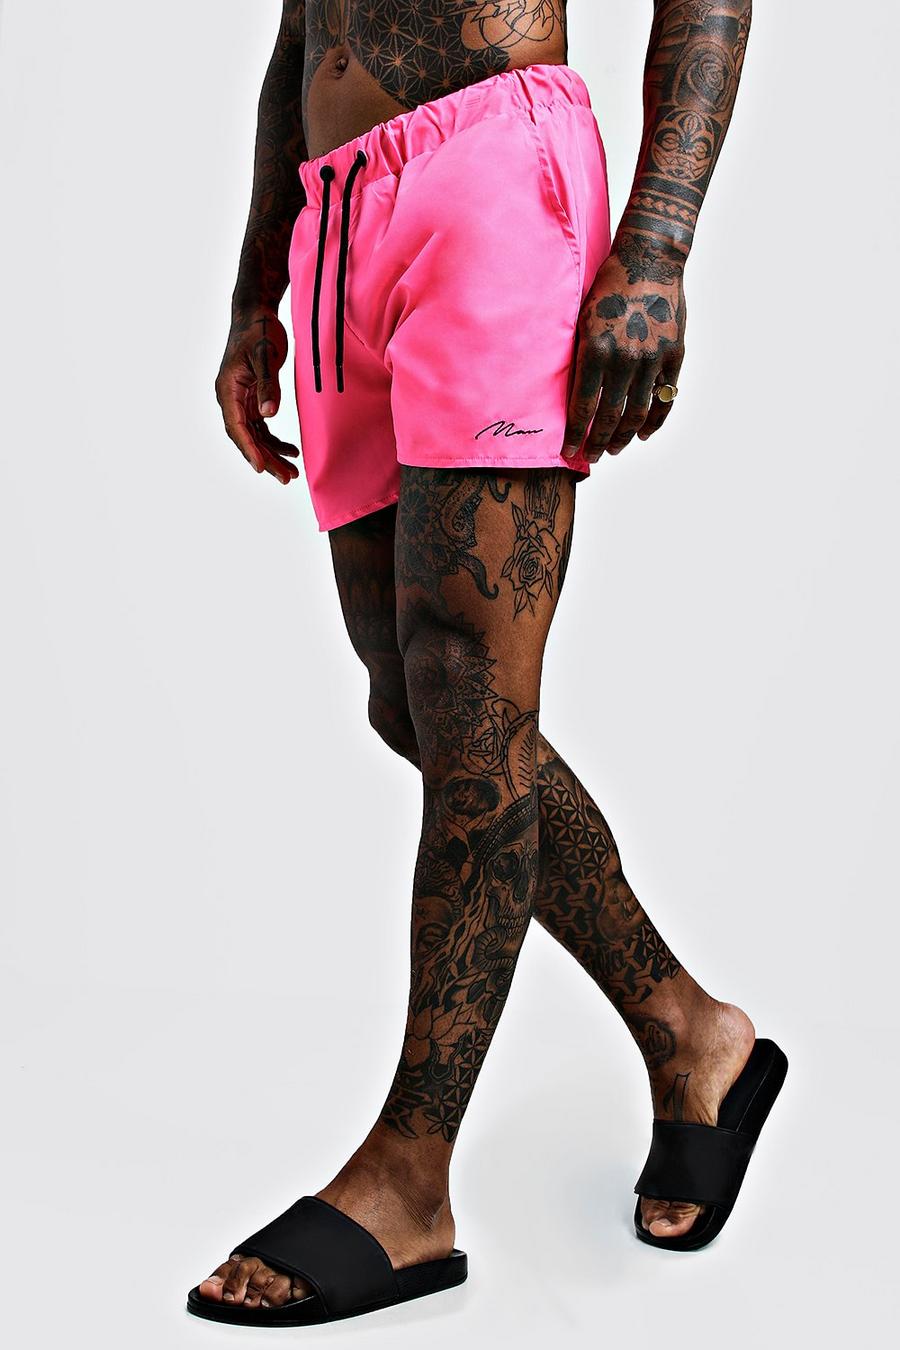 Pantalones de largo medio con cinta de la marca MAN, Rosa fosforito image number 1